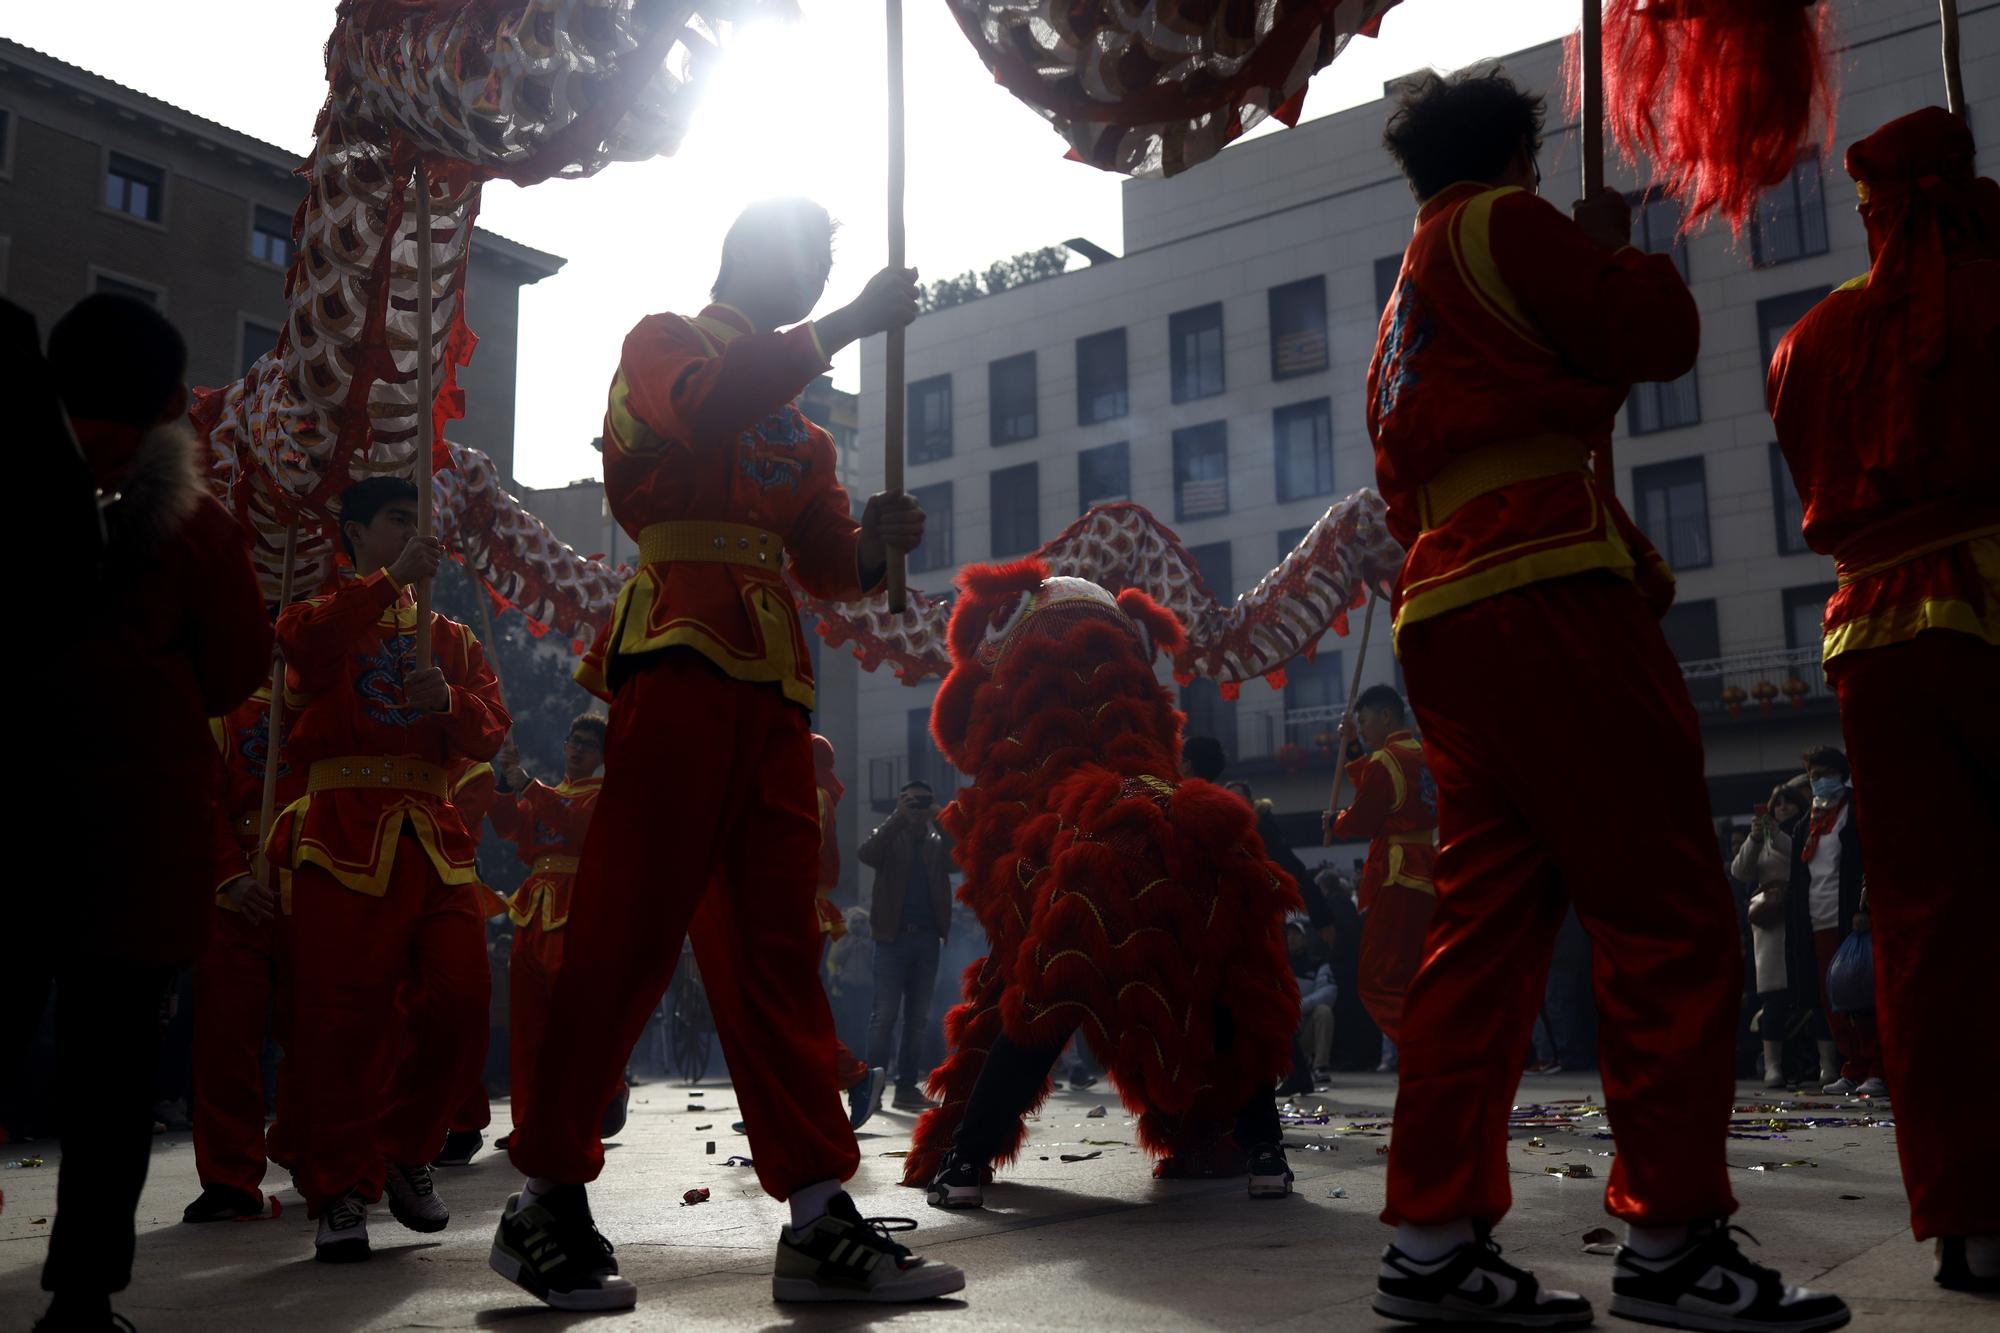 La comunidad china de Zaragoza llena de color el centro para saludar al Año del conejo